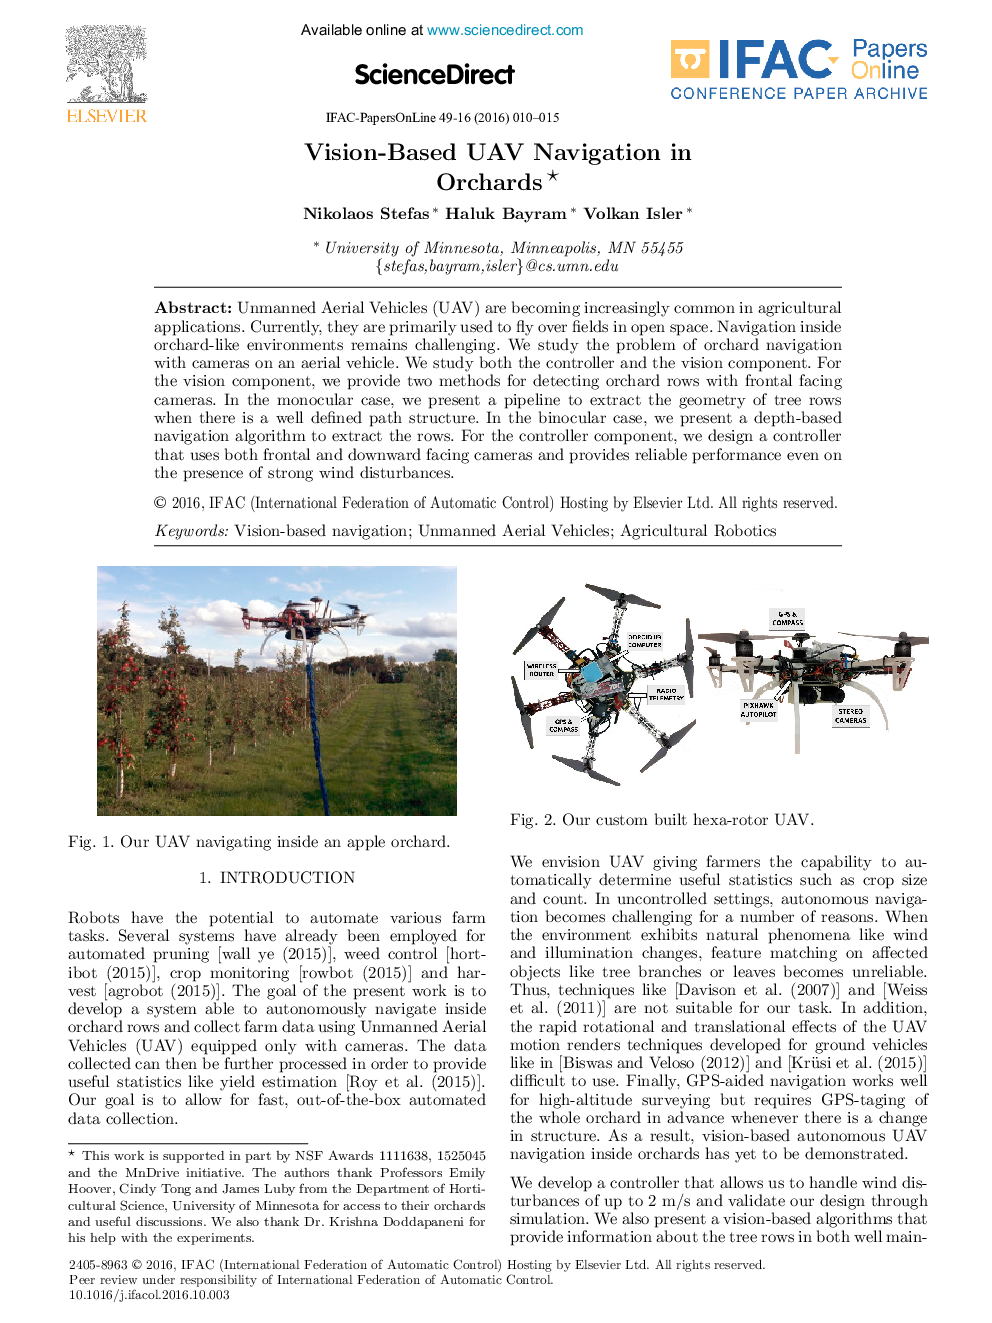 Vision-Based UAV Navigation in Orchards*